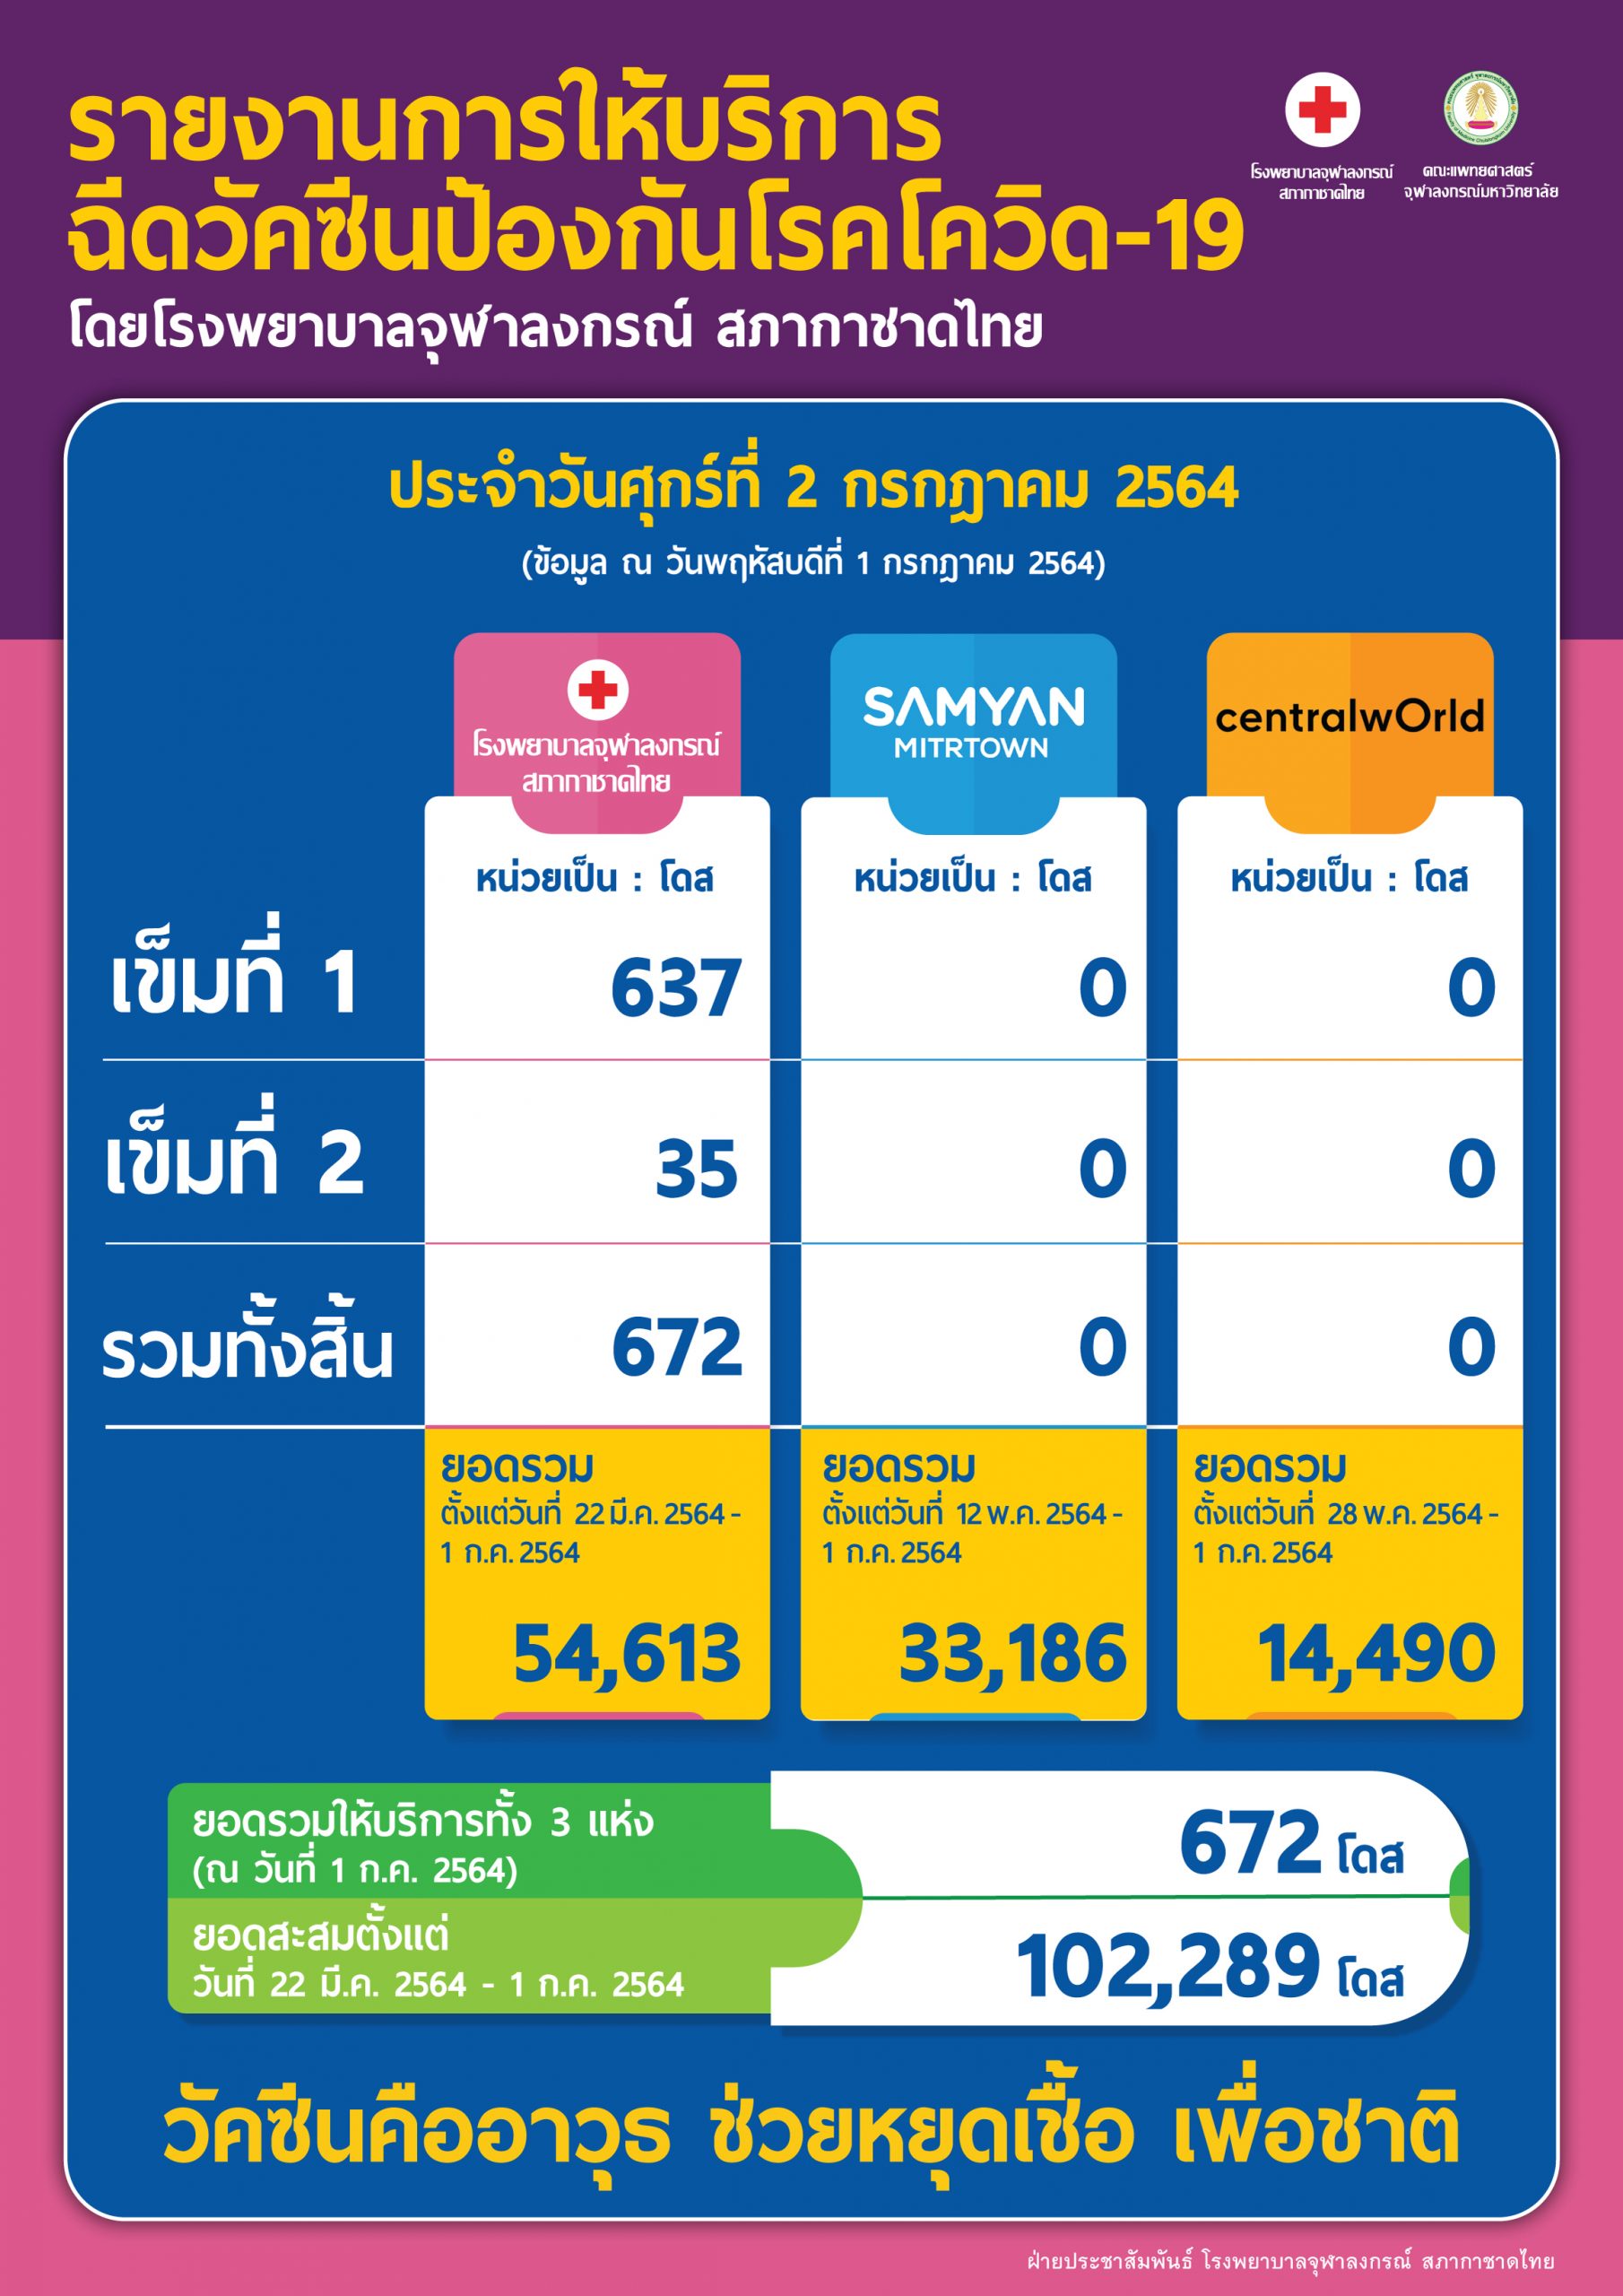 รายงานการให้บริการฉีดวัคซีนป้องกันโรคโควิด-19 โดยโรงพยาบาลจุฬาลงกรณ์ สภากาชาดไทย ประจำวันศุกร์ที่ 2 กรกฎาคม 2564